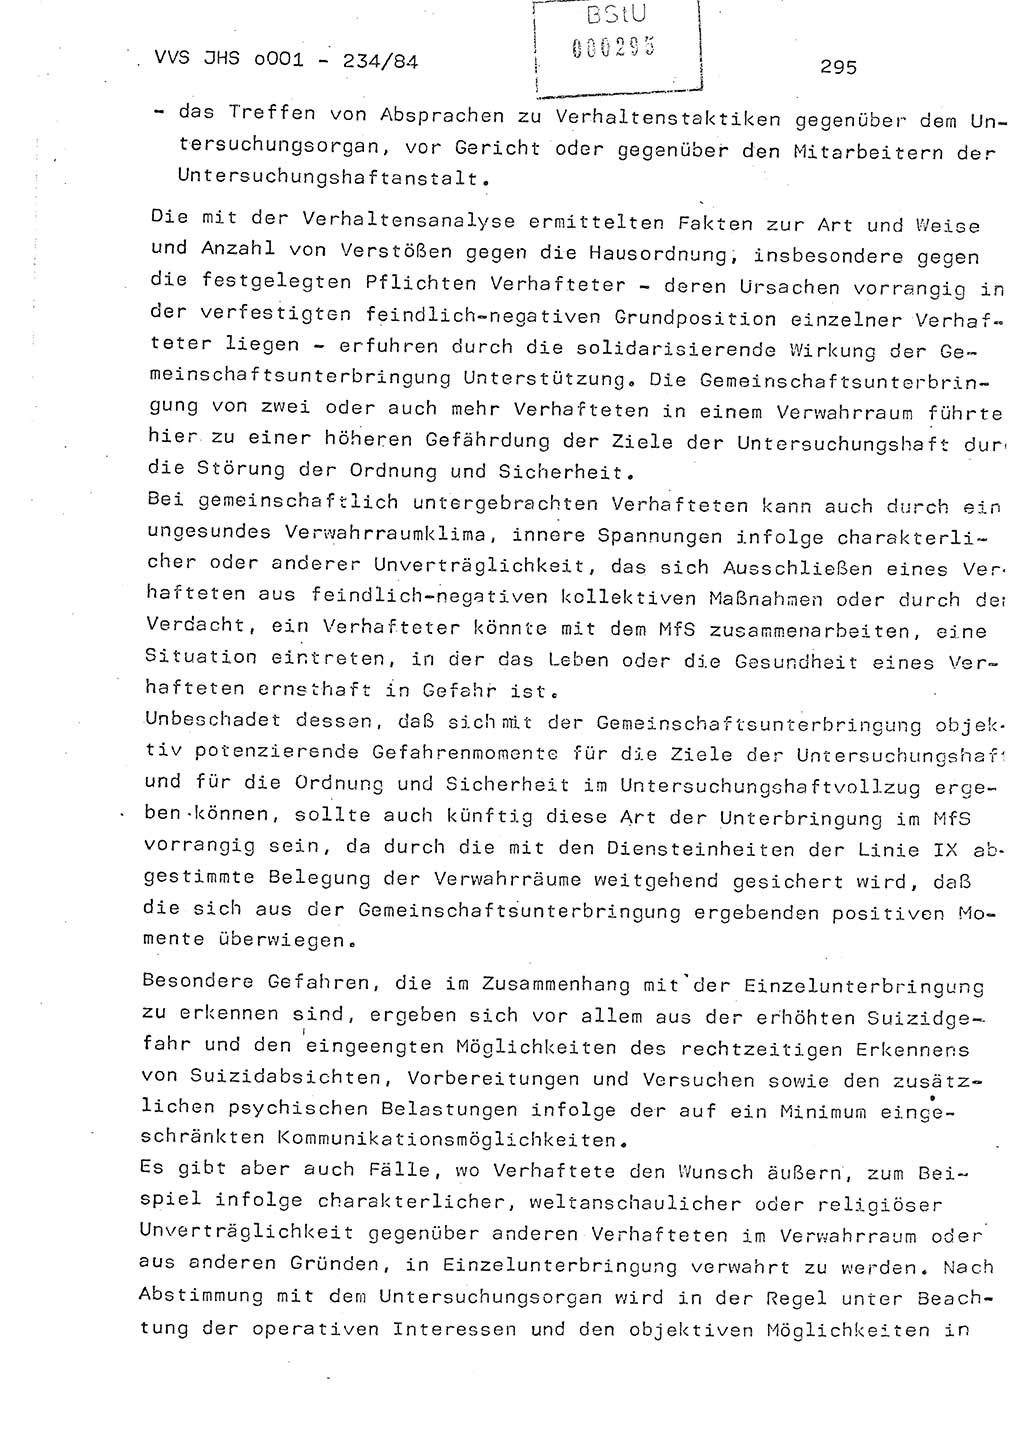 Dissertation Oberst Siegfried Rataizick (Abt. ⅩⅣ), Oberstleutnant Volkmar Heinz (Abt. ⅩⅣ), Oberstleutnant Werner Stein (HA Ⅸ), Hauptmann Heinz Conrad (JHS), Ministerium für Staatssicherheit (MfS) [Deutsche Demokratische Republik (DDR)], Juristische Hochschule (JHS), Vertrauliche Verschlußsache (VVS) o001-234/84, Potsdam 1984, Seite 295 (Diss. MfS DDR JHS VVS o001-234/84 1984, S. 295)